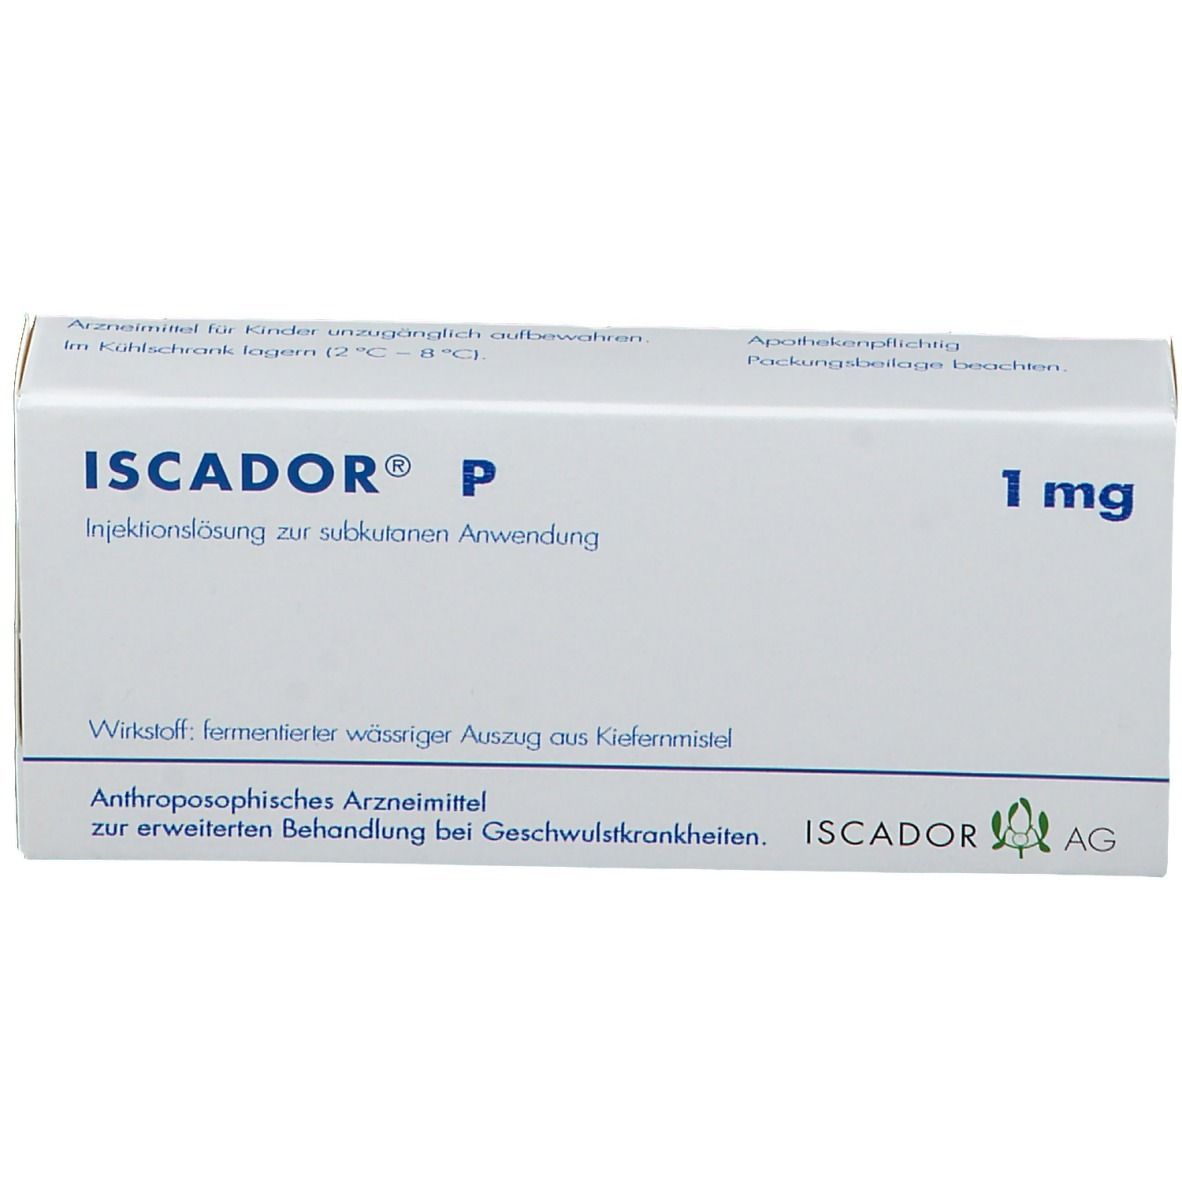 ISCADOR® P 1 mg